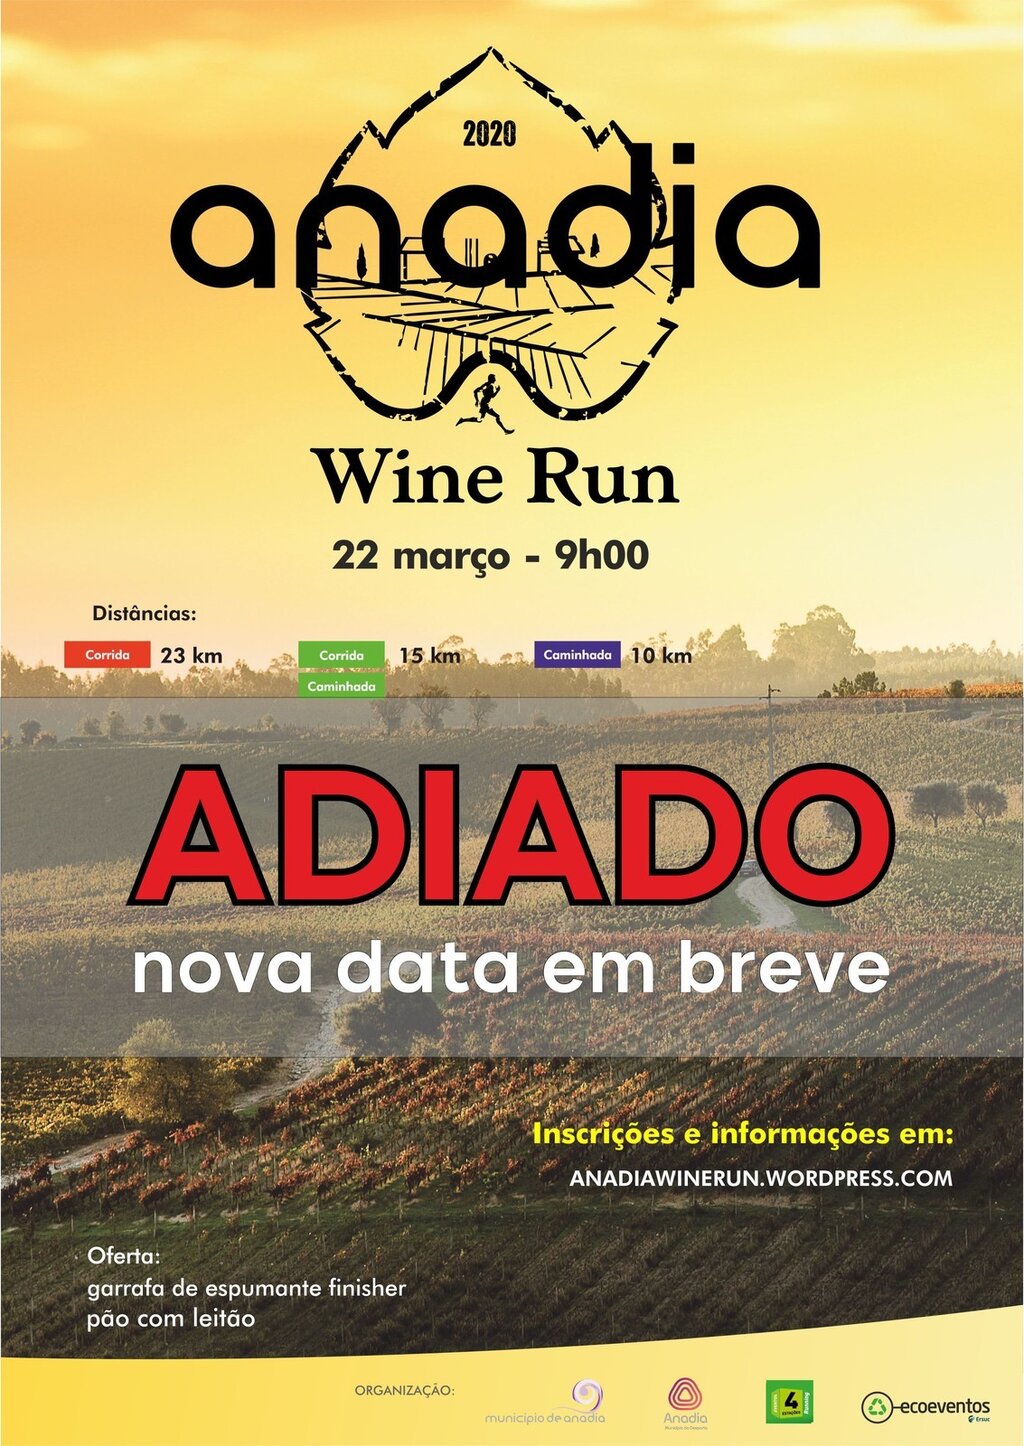 Anadia Win Run - ADIADO